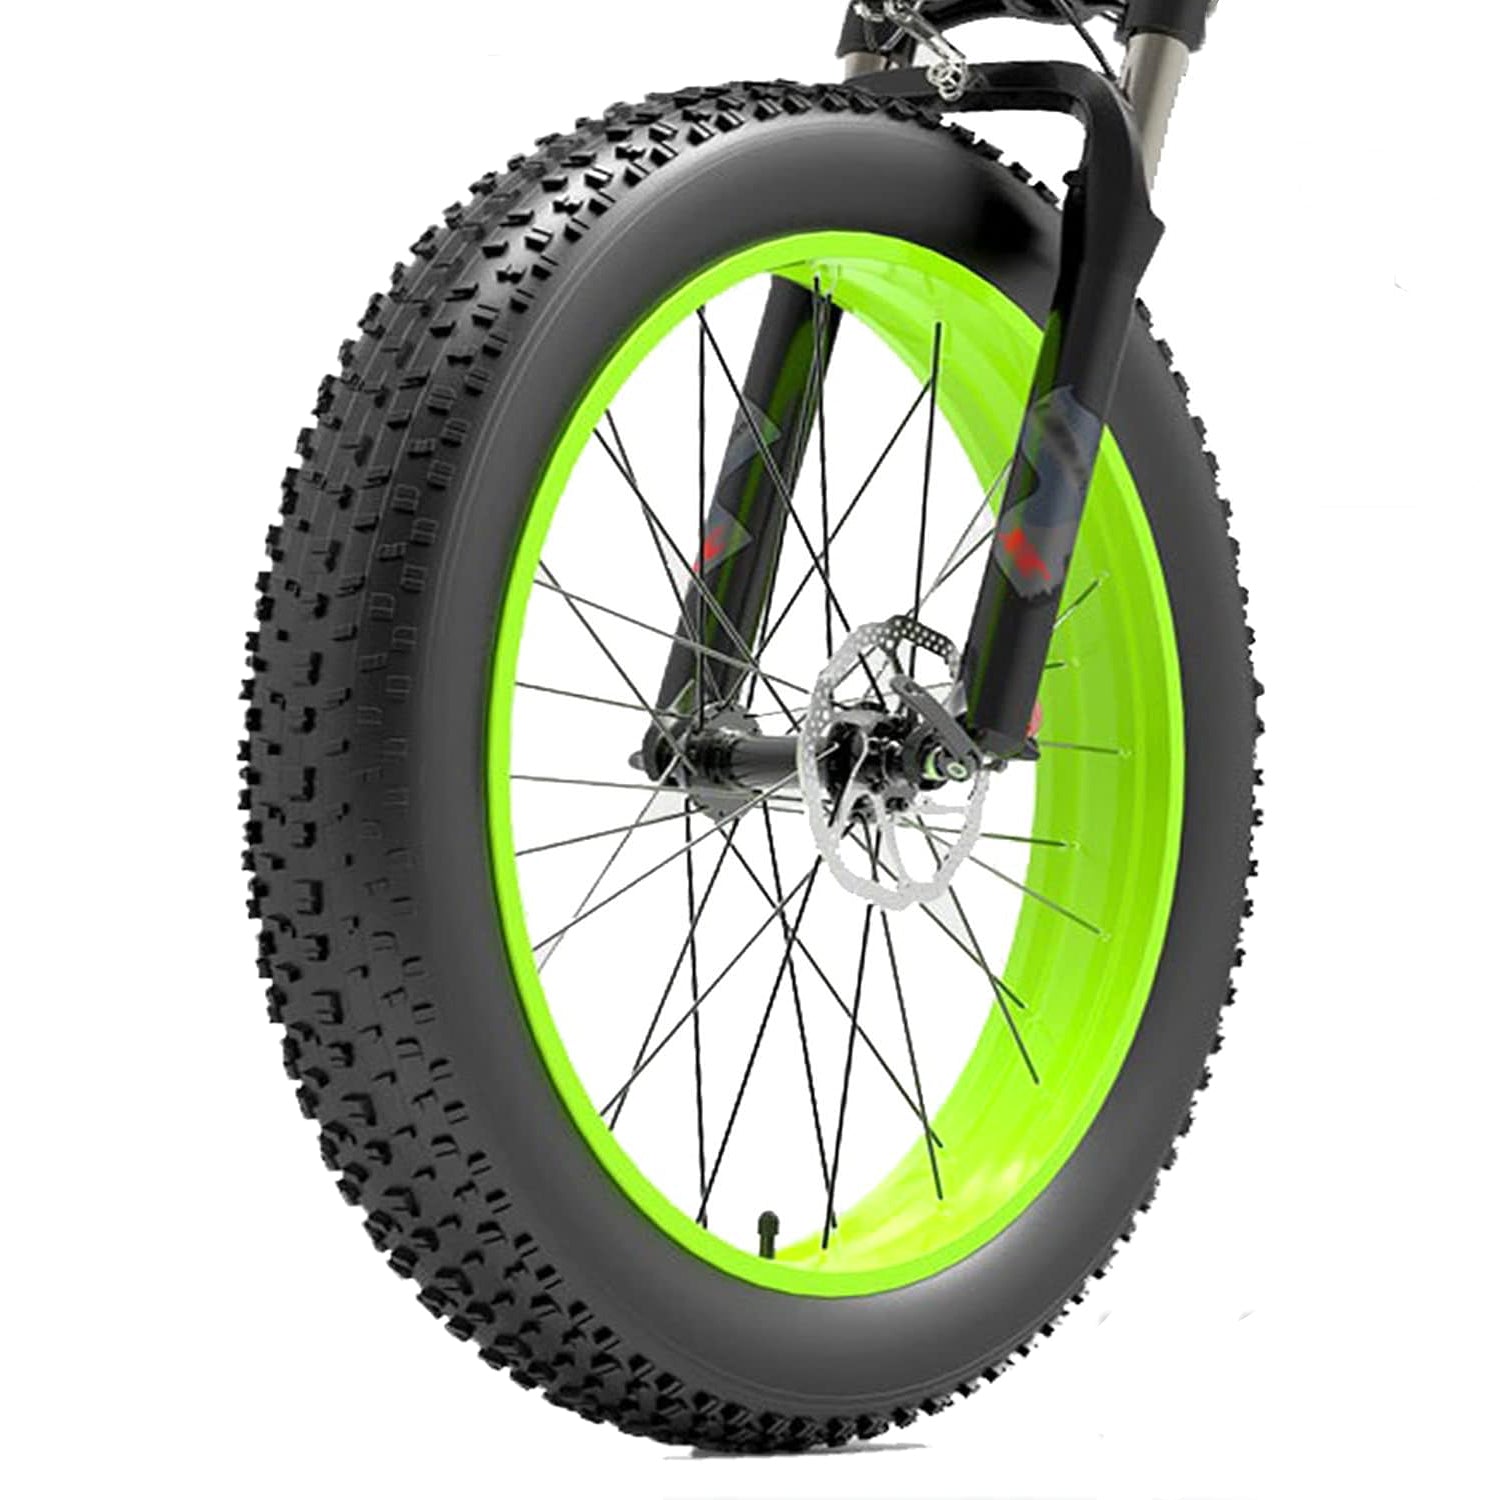 Hycline Raider MTB Fat Bike Tire 20×4.0/26×4.0